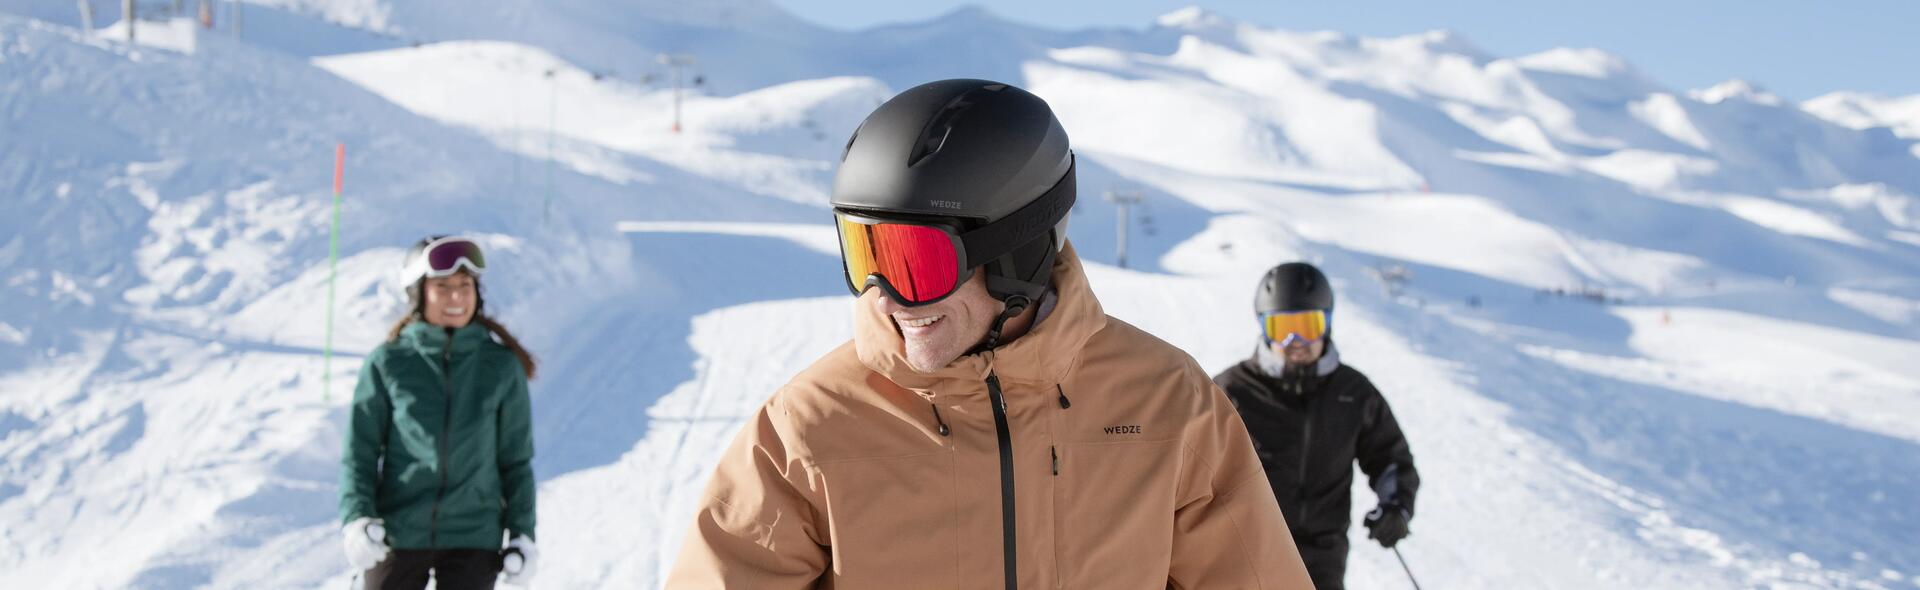 Comment choisir un casque de ski conseils wedze